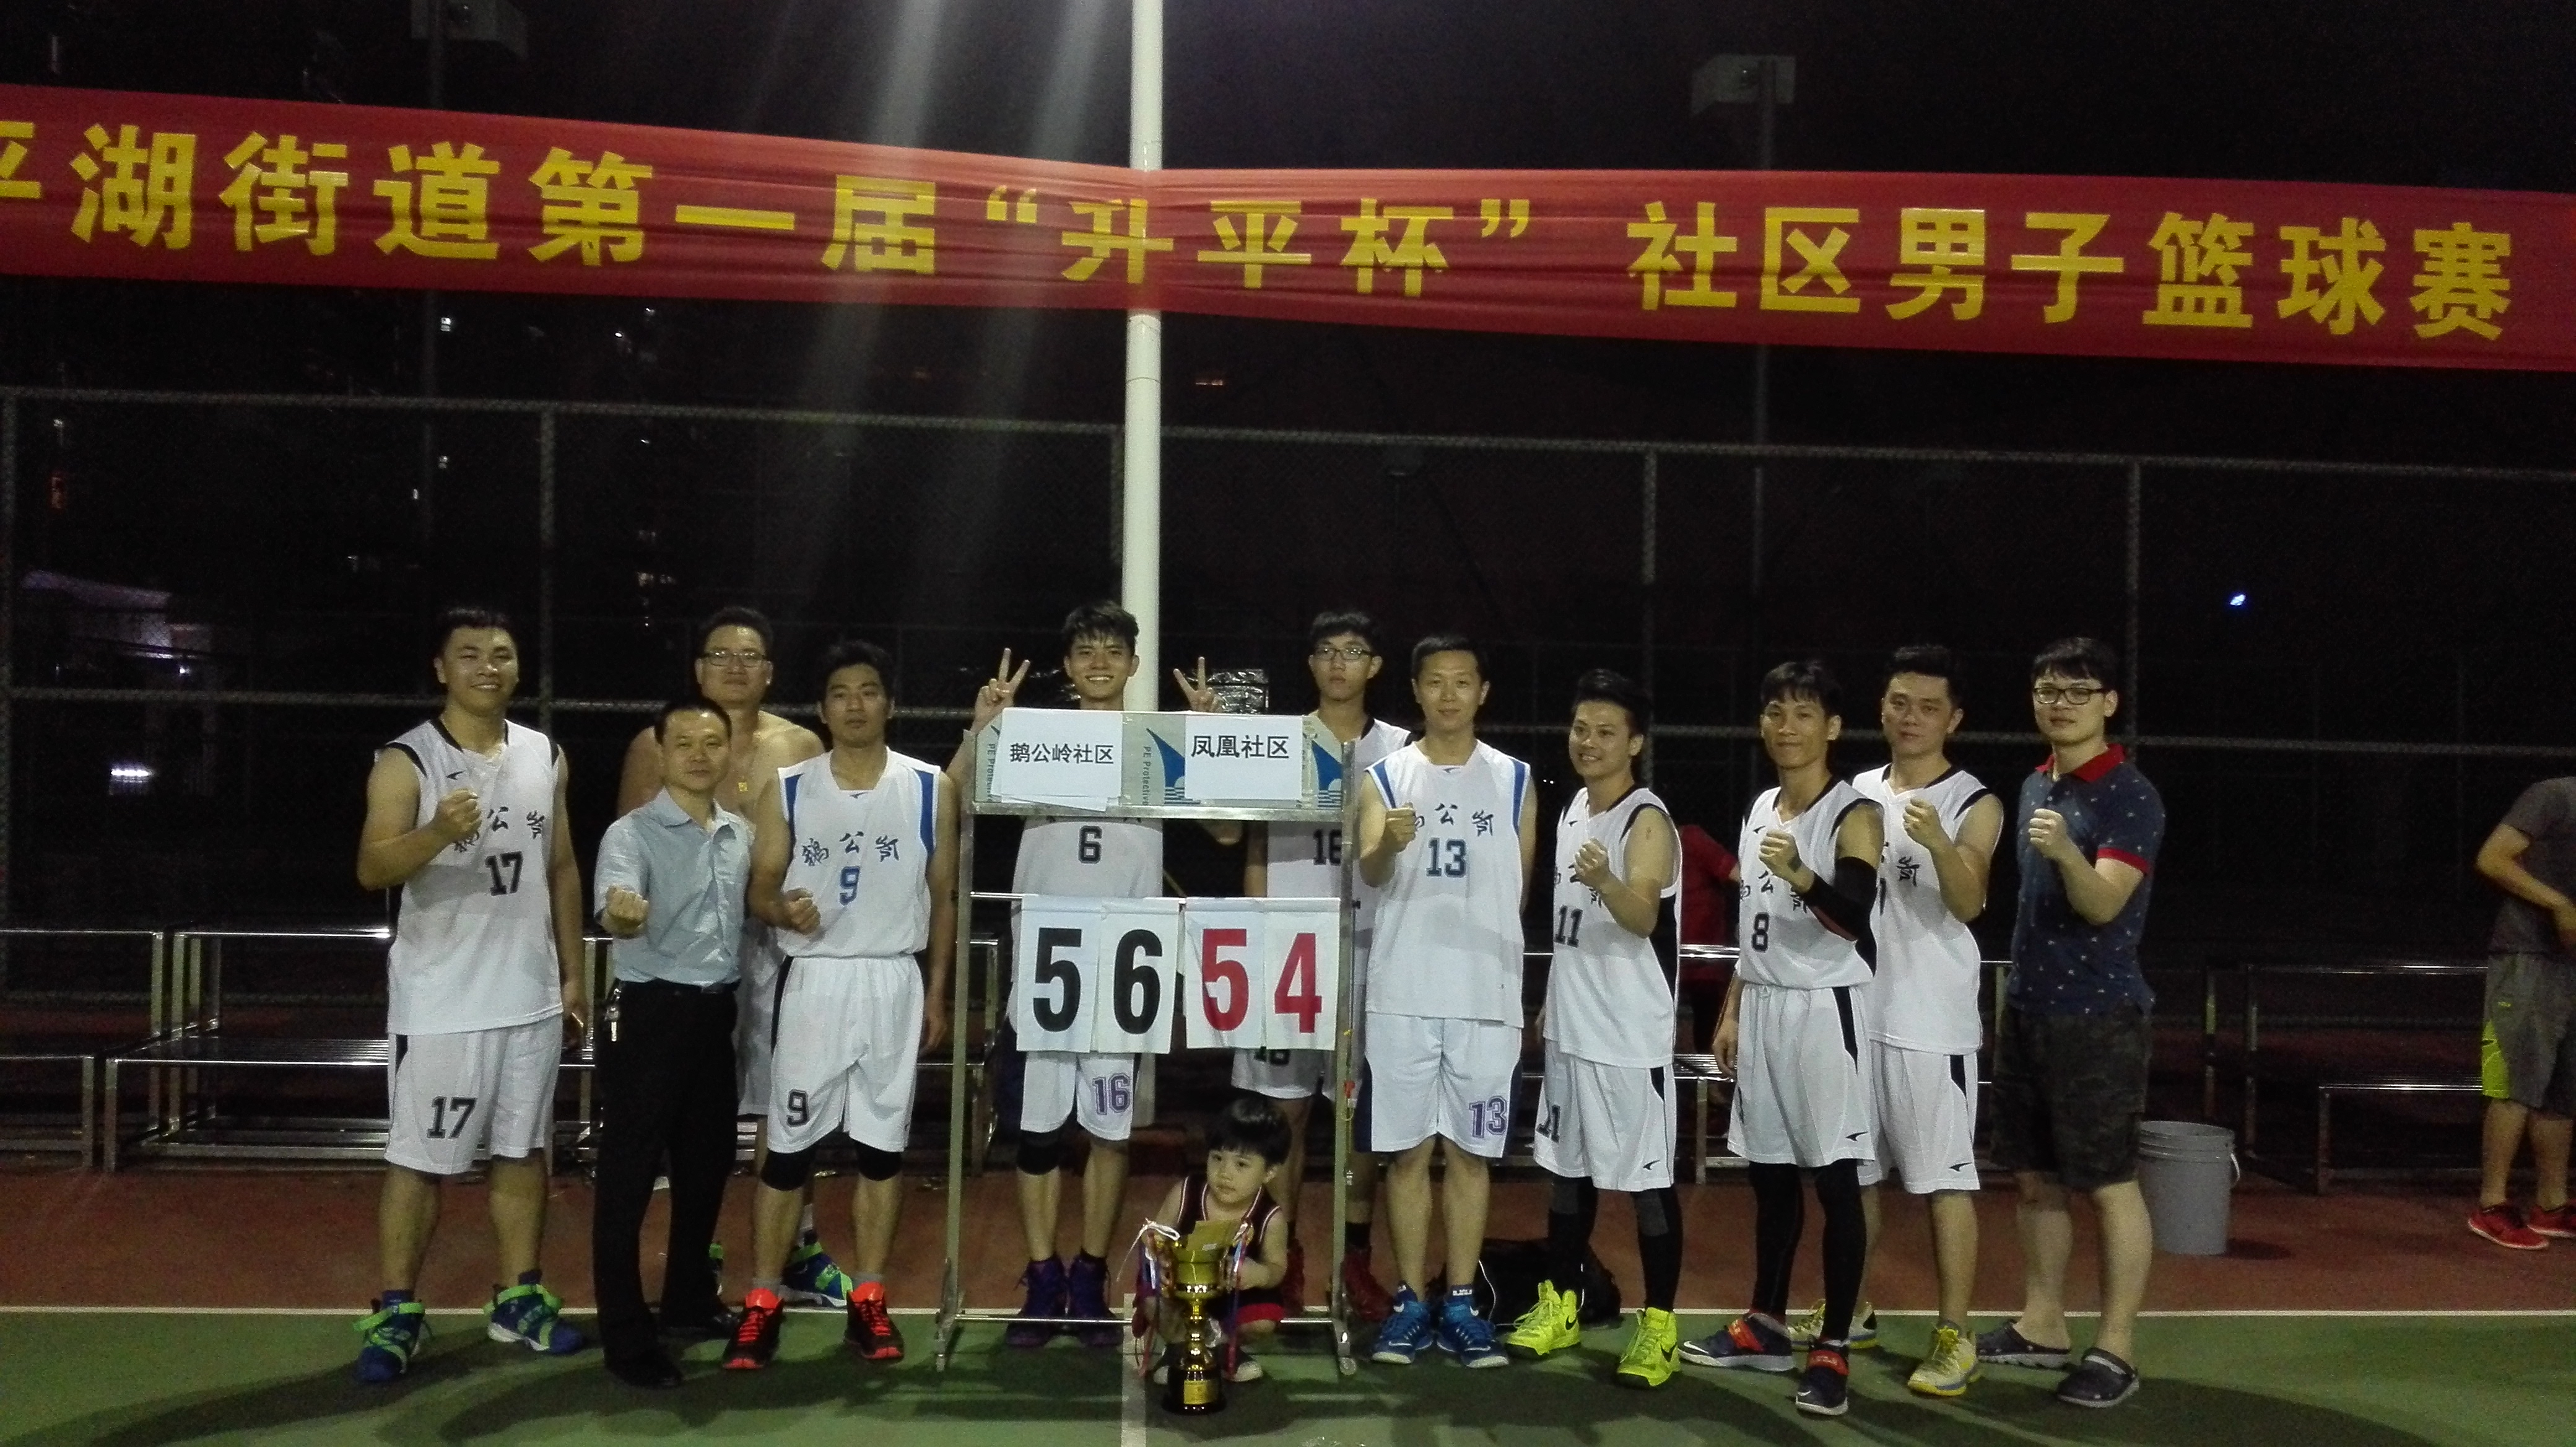 2016年平湖街道第一届“升平杯”社区男子篮球赛荣获冠军